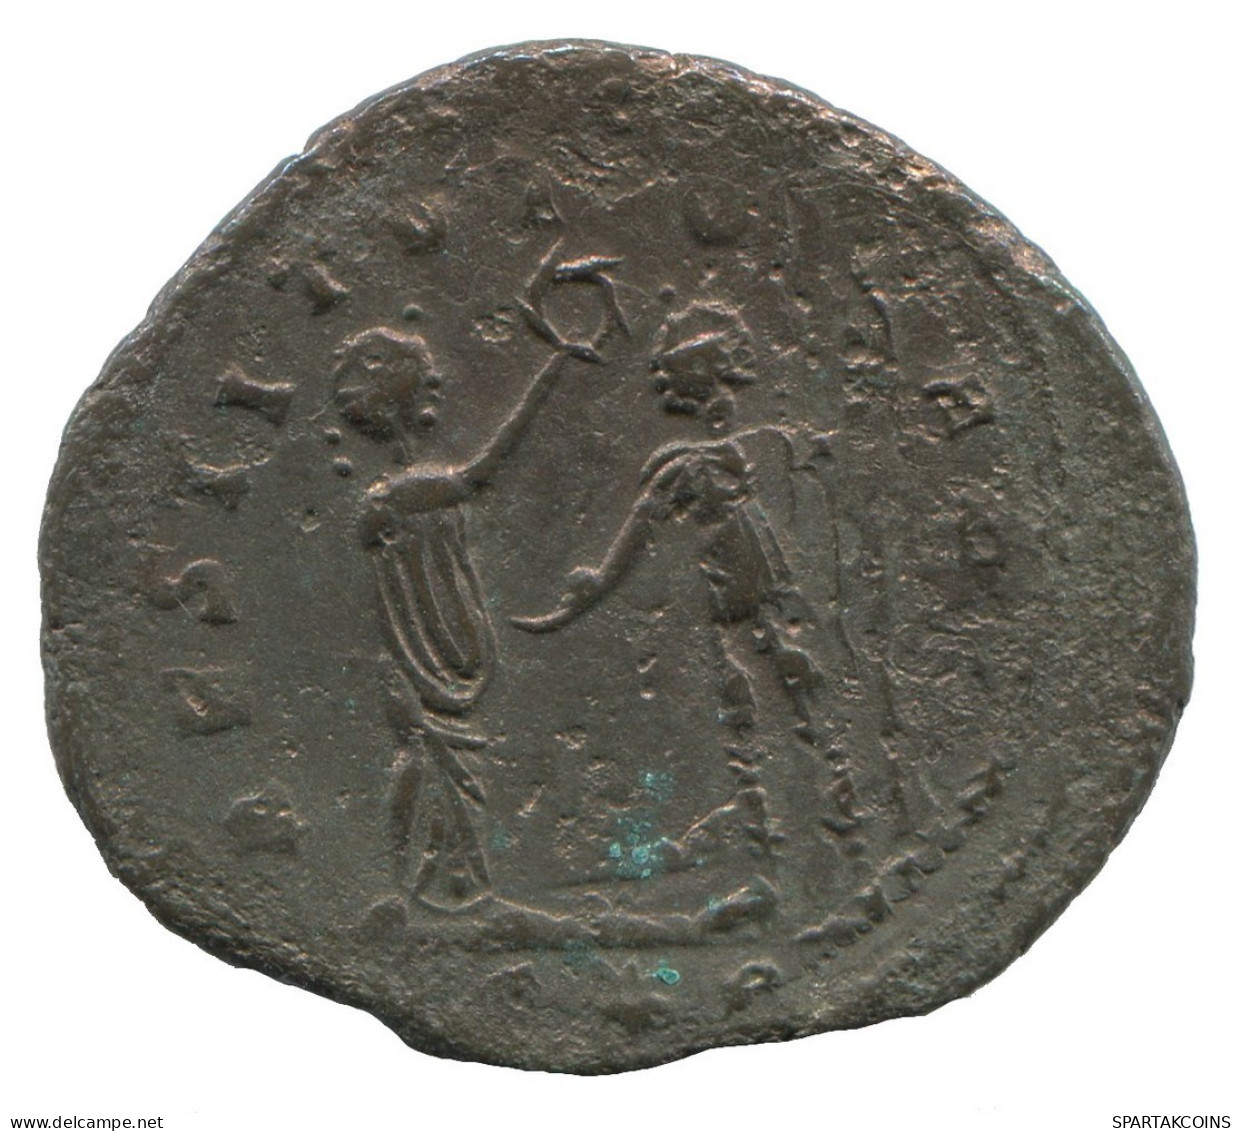 AURELIAN ANTONINIANUS Cyzicus C*p AD347 Restitutorbis 3.3g/24mm #NNN1642.18.F.A - Der Soldatenkaiser (die Militärkrise) (235 / 284)